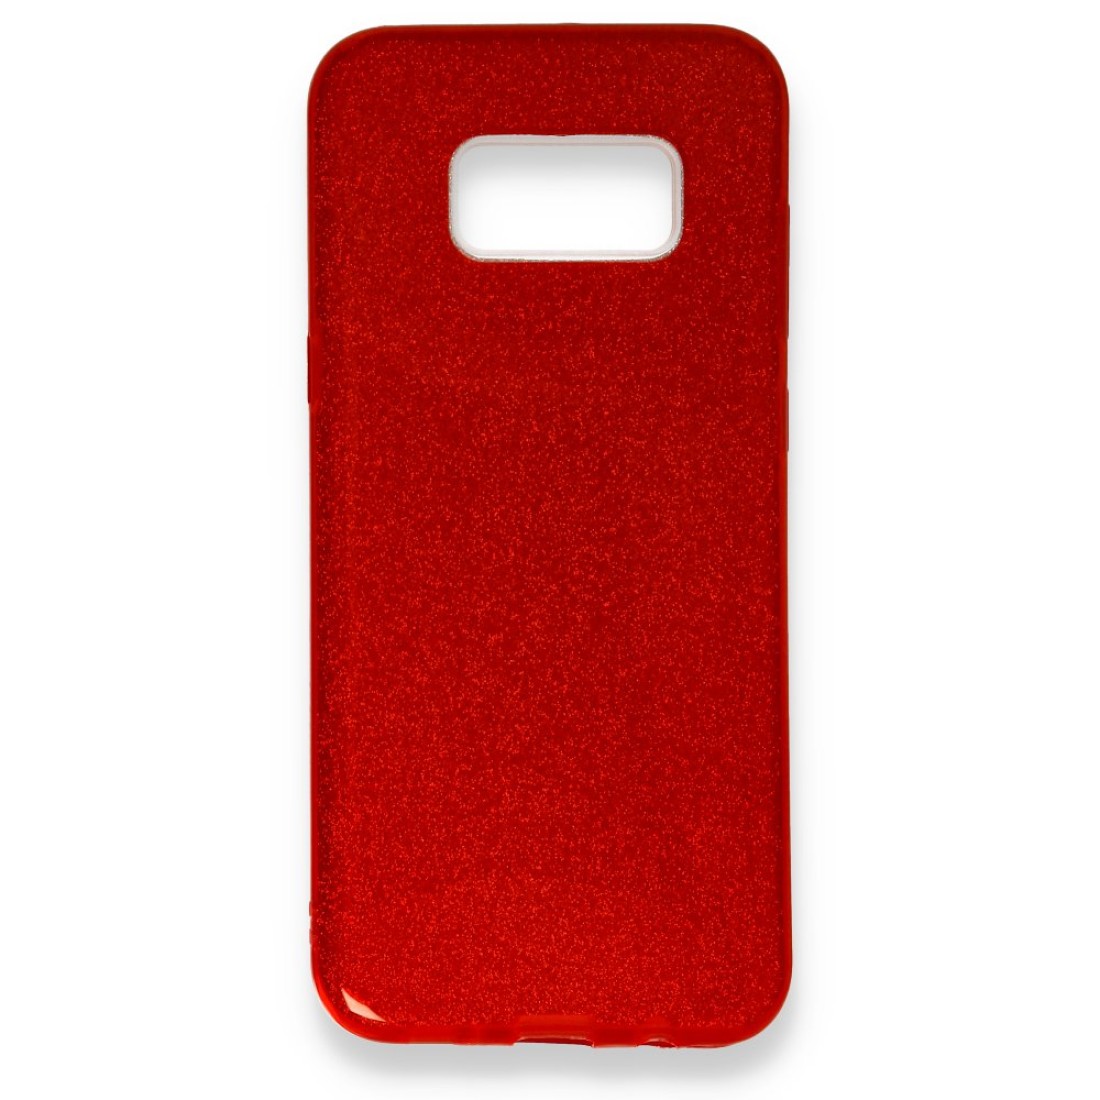 Samsung Galaxy S8 Plus Kılıf Simli Katmanlı Silikon - Kırmızı